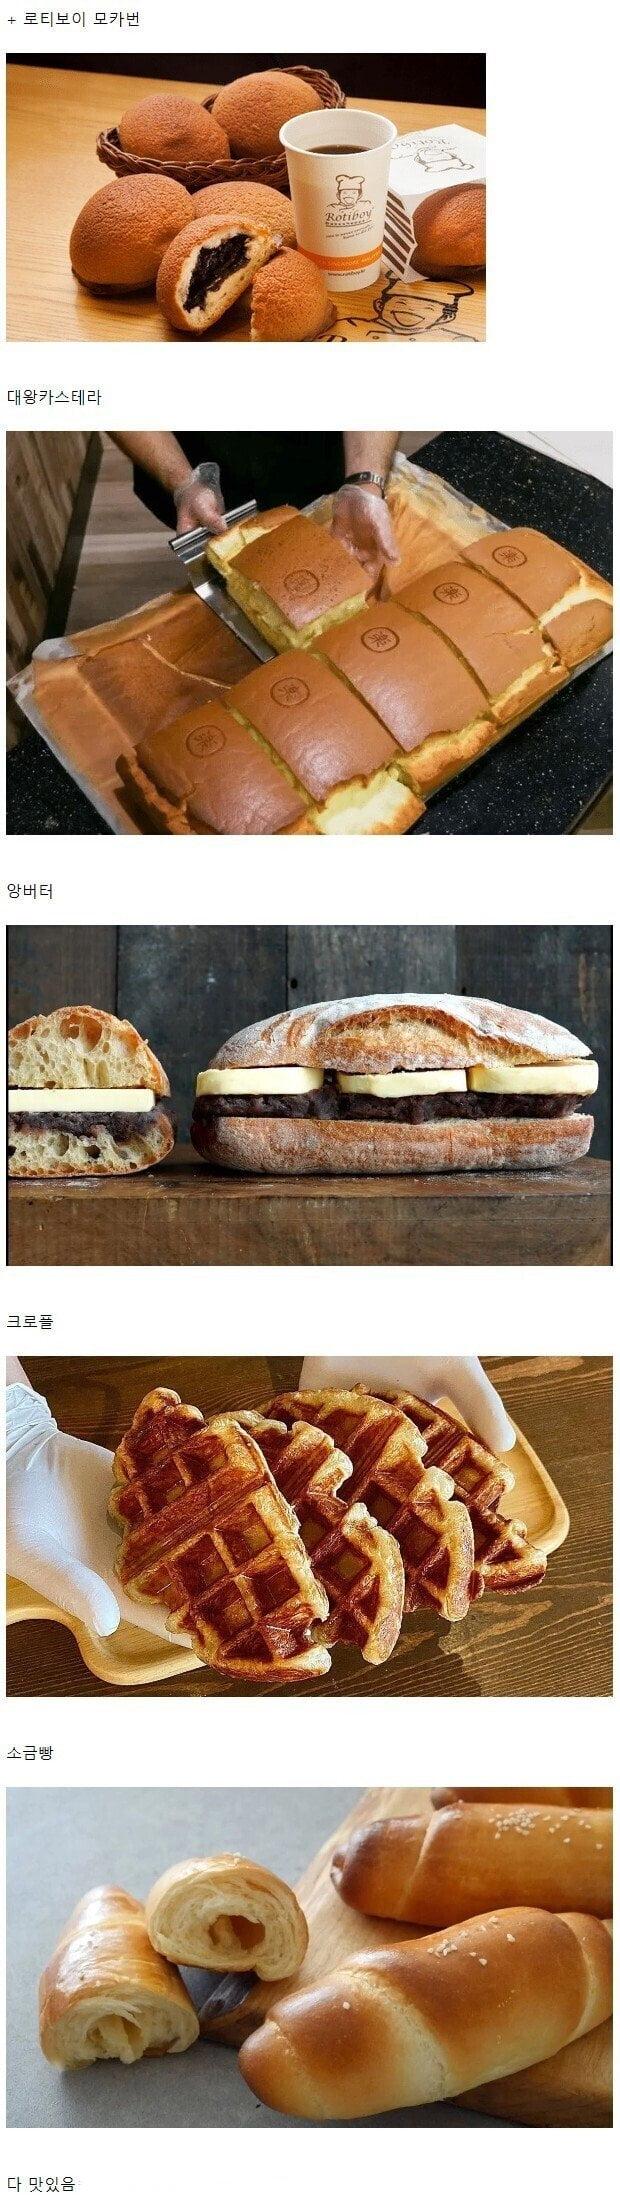 歴代大韓民国パン流行コJPG